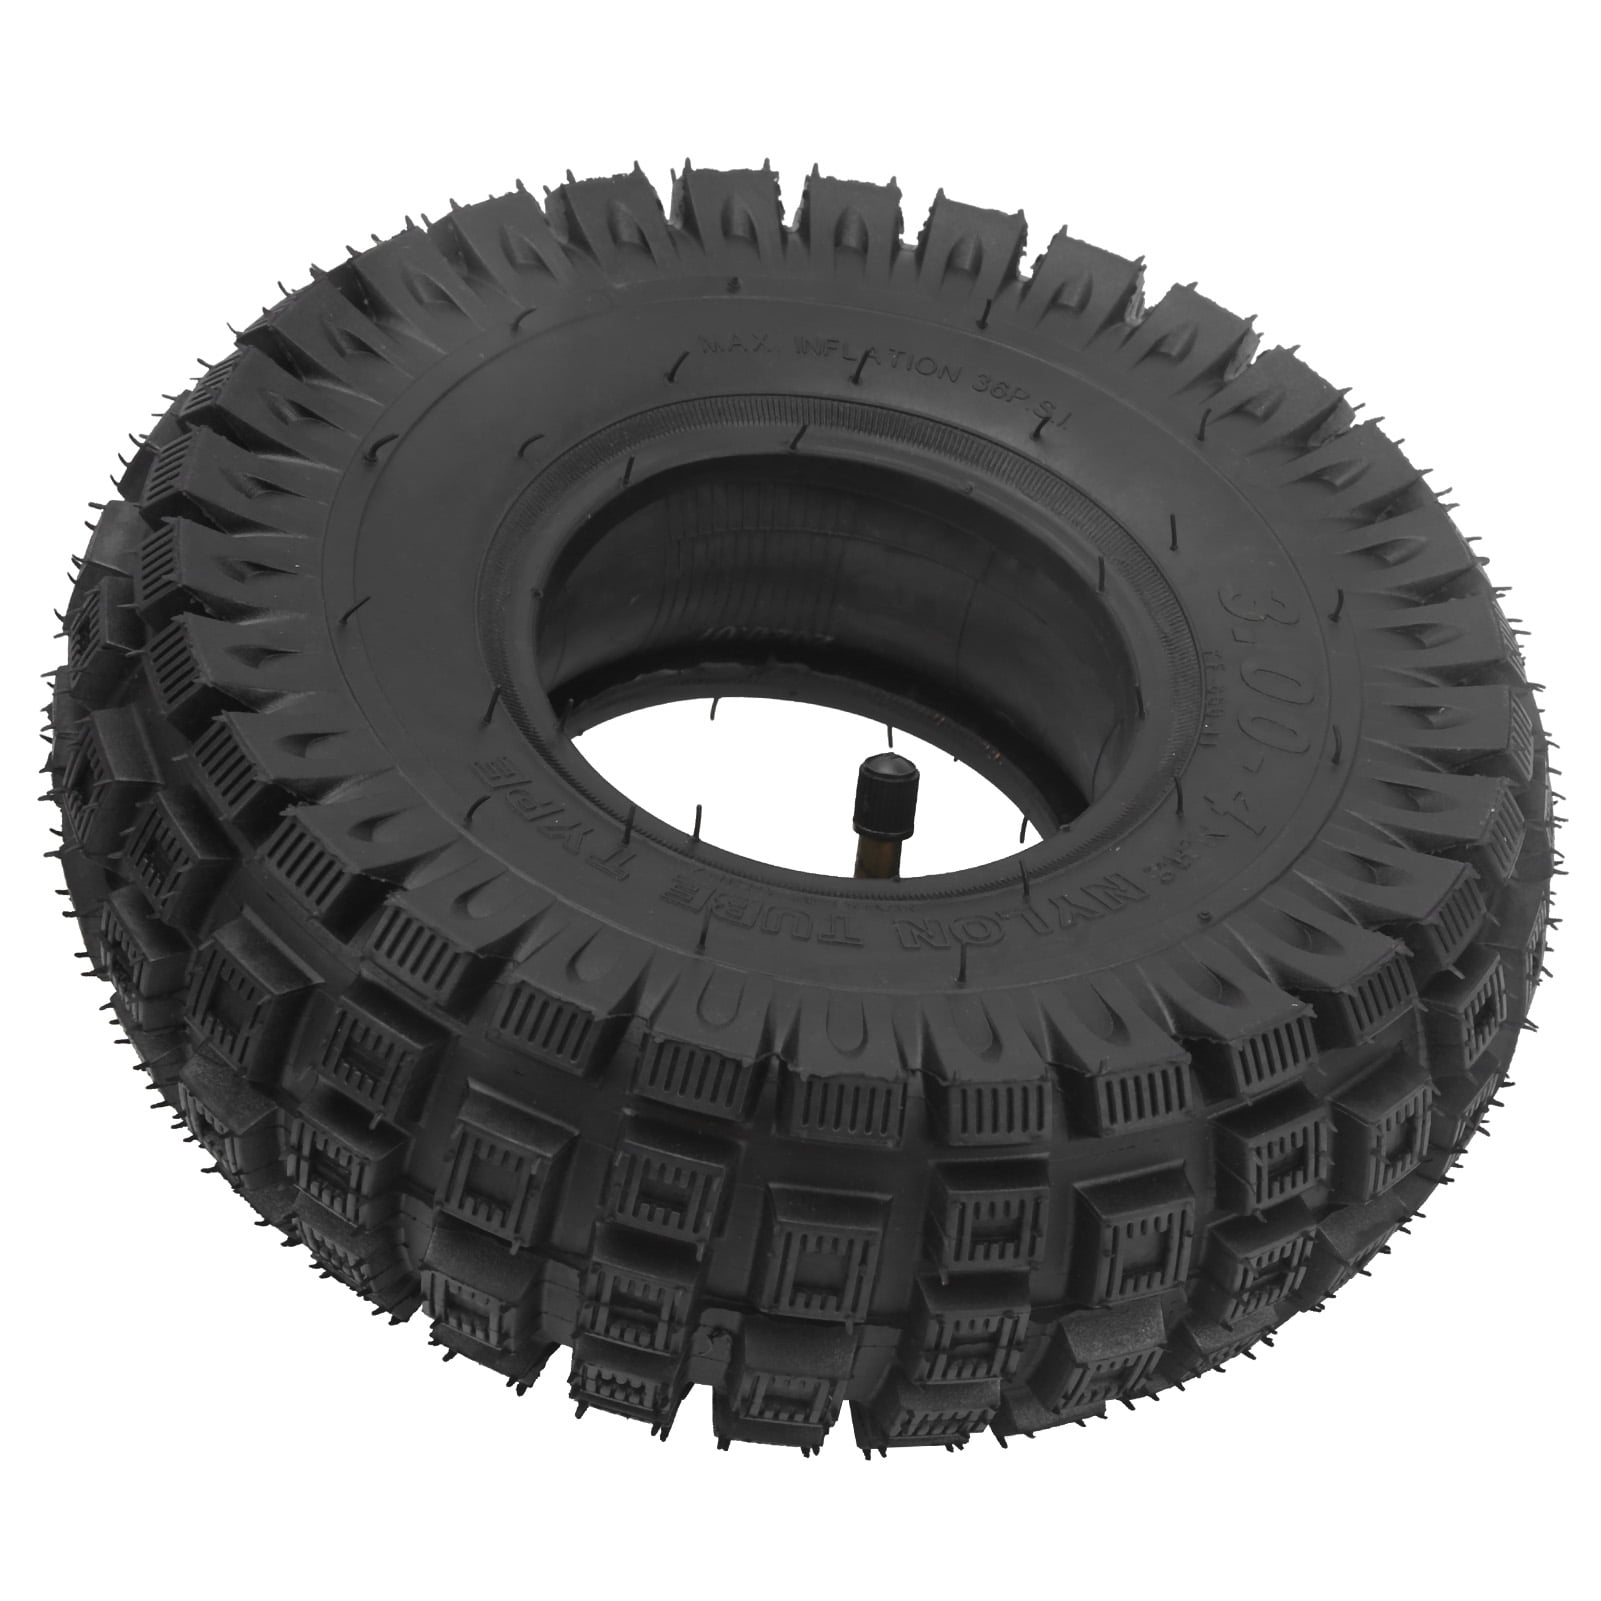 Heavy Duty Tyre 3.00-4 Grey Knobbly Block Tread Electric Scooter Wheel 4 Ply 